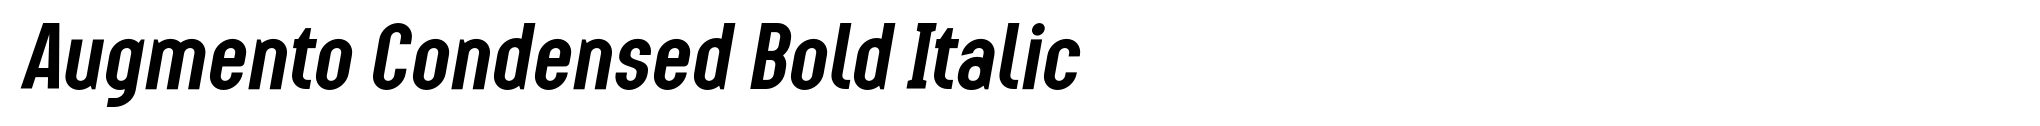 Augmento Condensed Bold Italic image